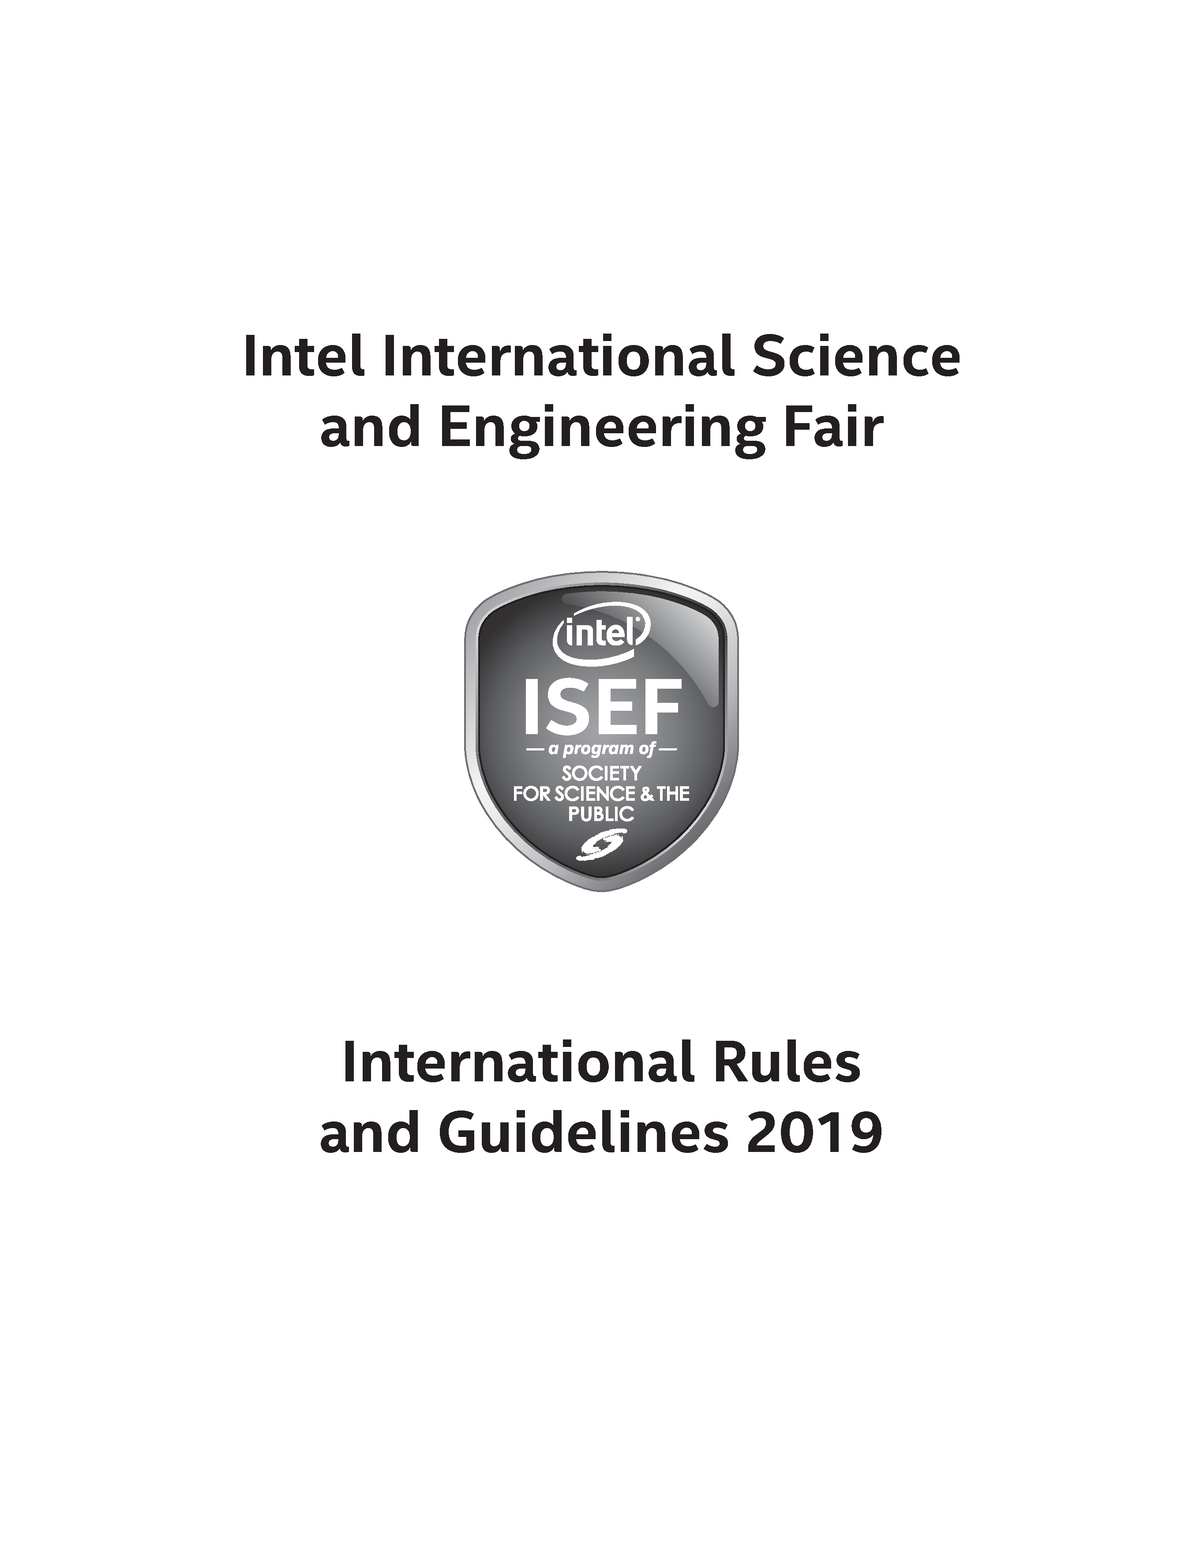 ISEF Rules Intel International Science and Engineering Fair